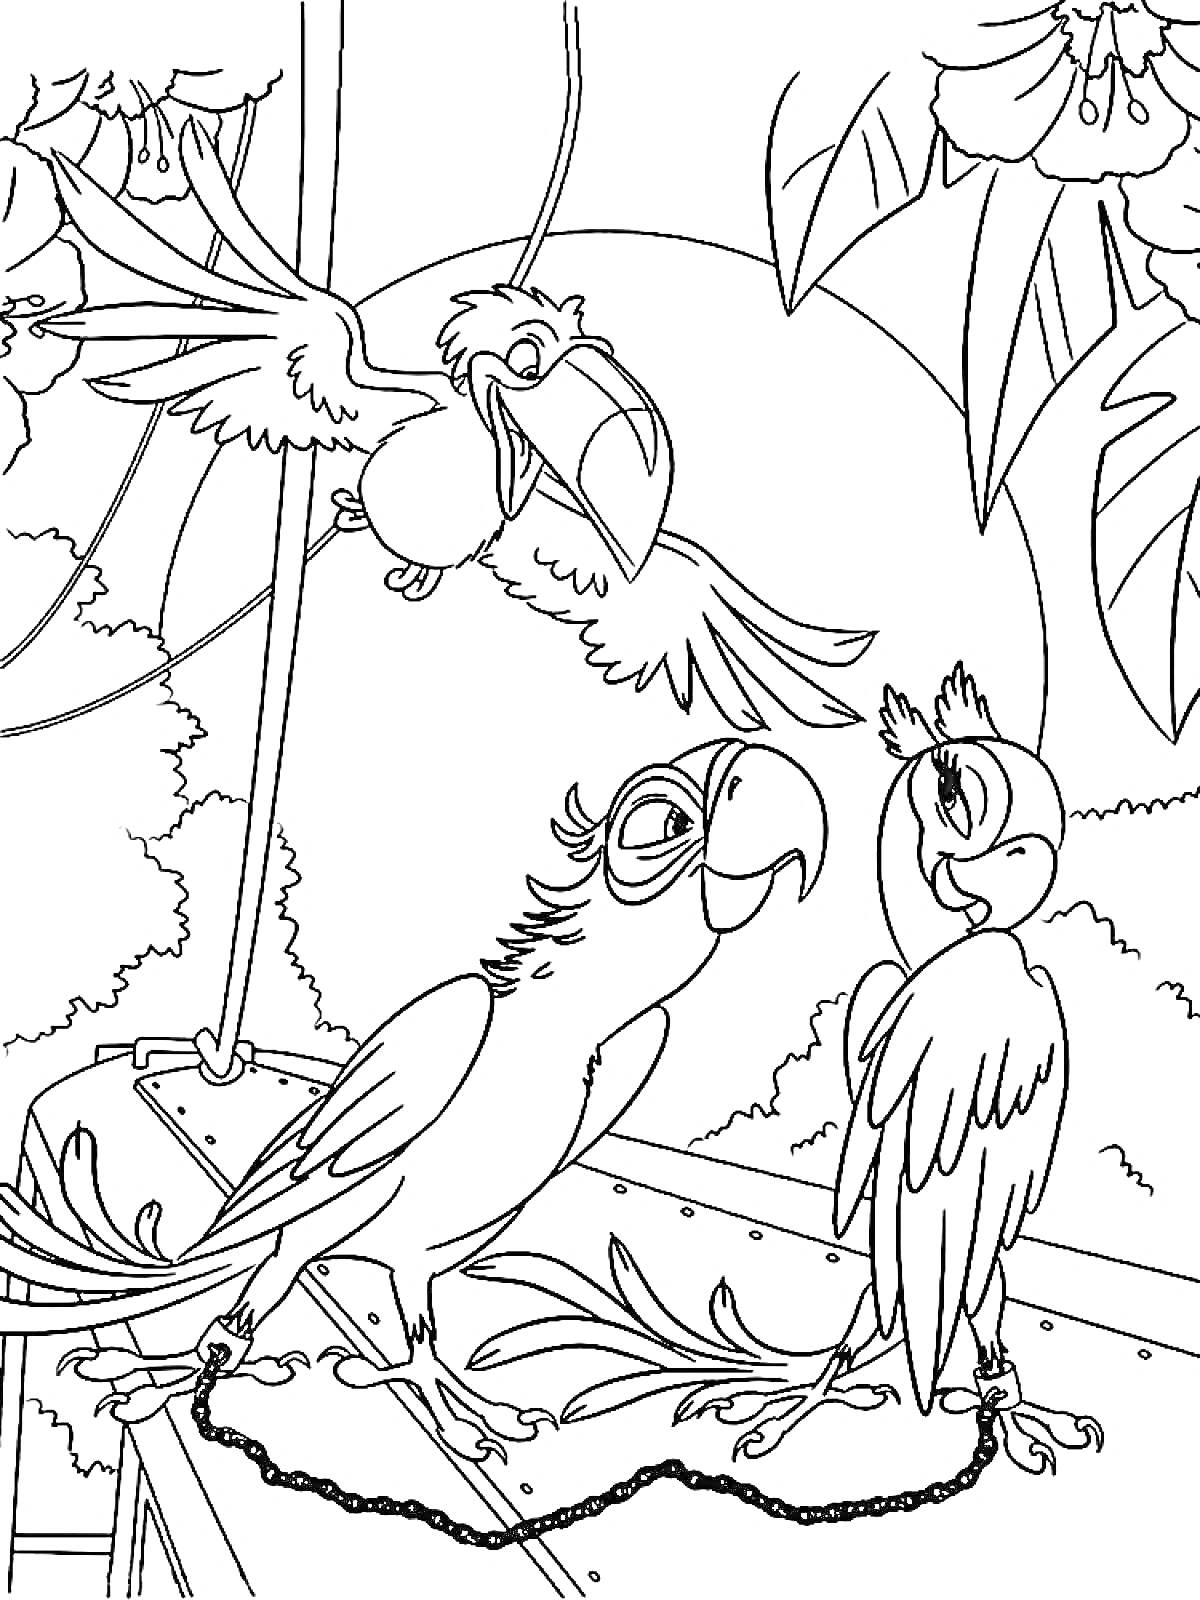 Раскраска Два попугая на крыше, за которыми наблюдает третий летящий попугай на фоне джунглей и цветущих растений.